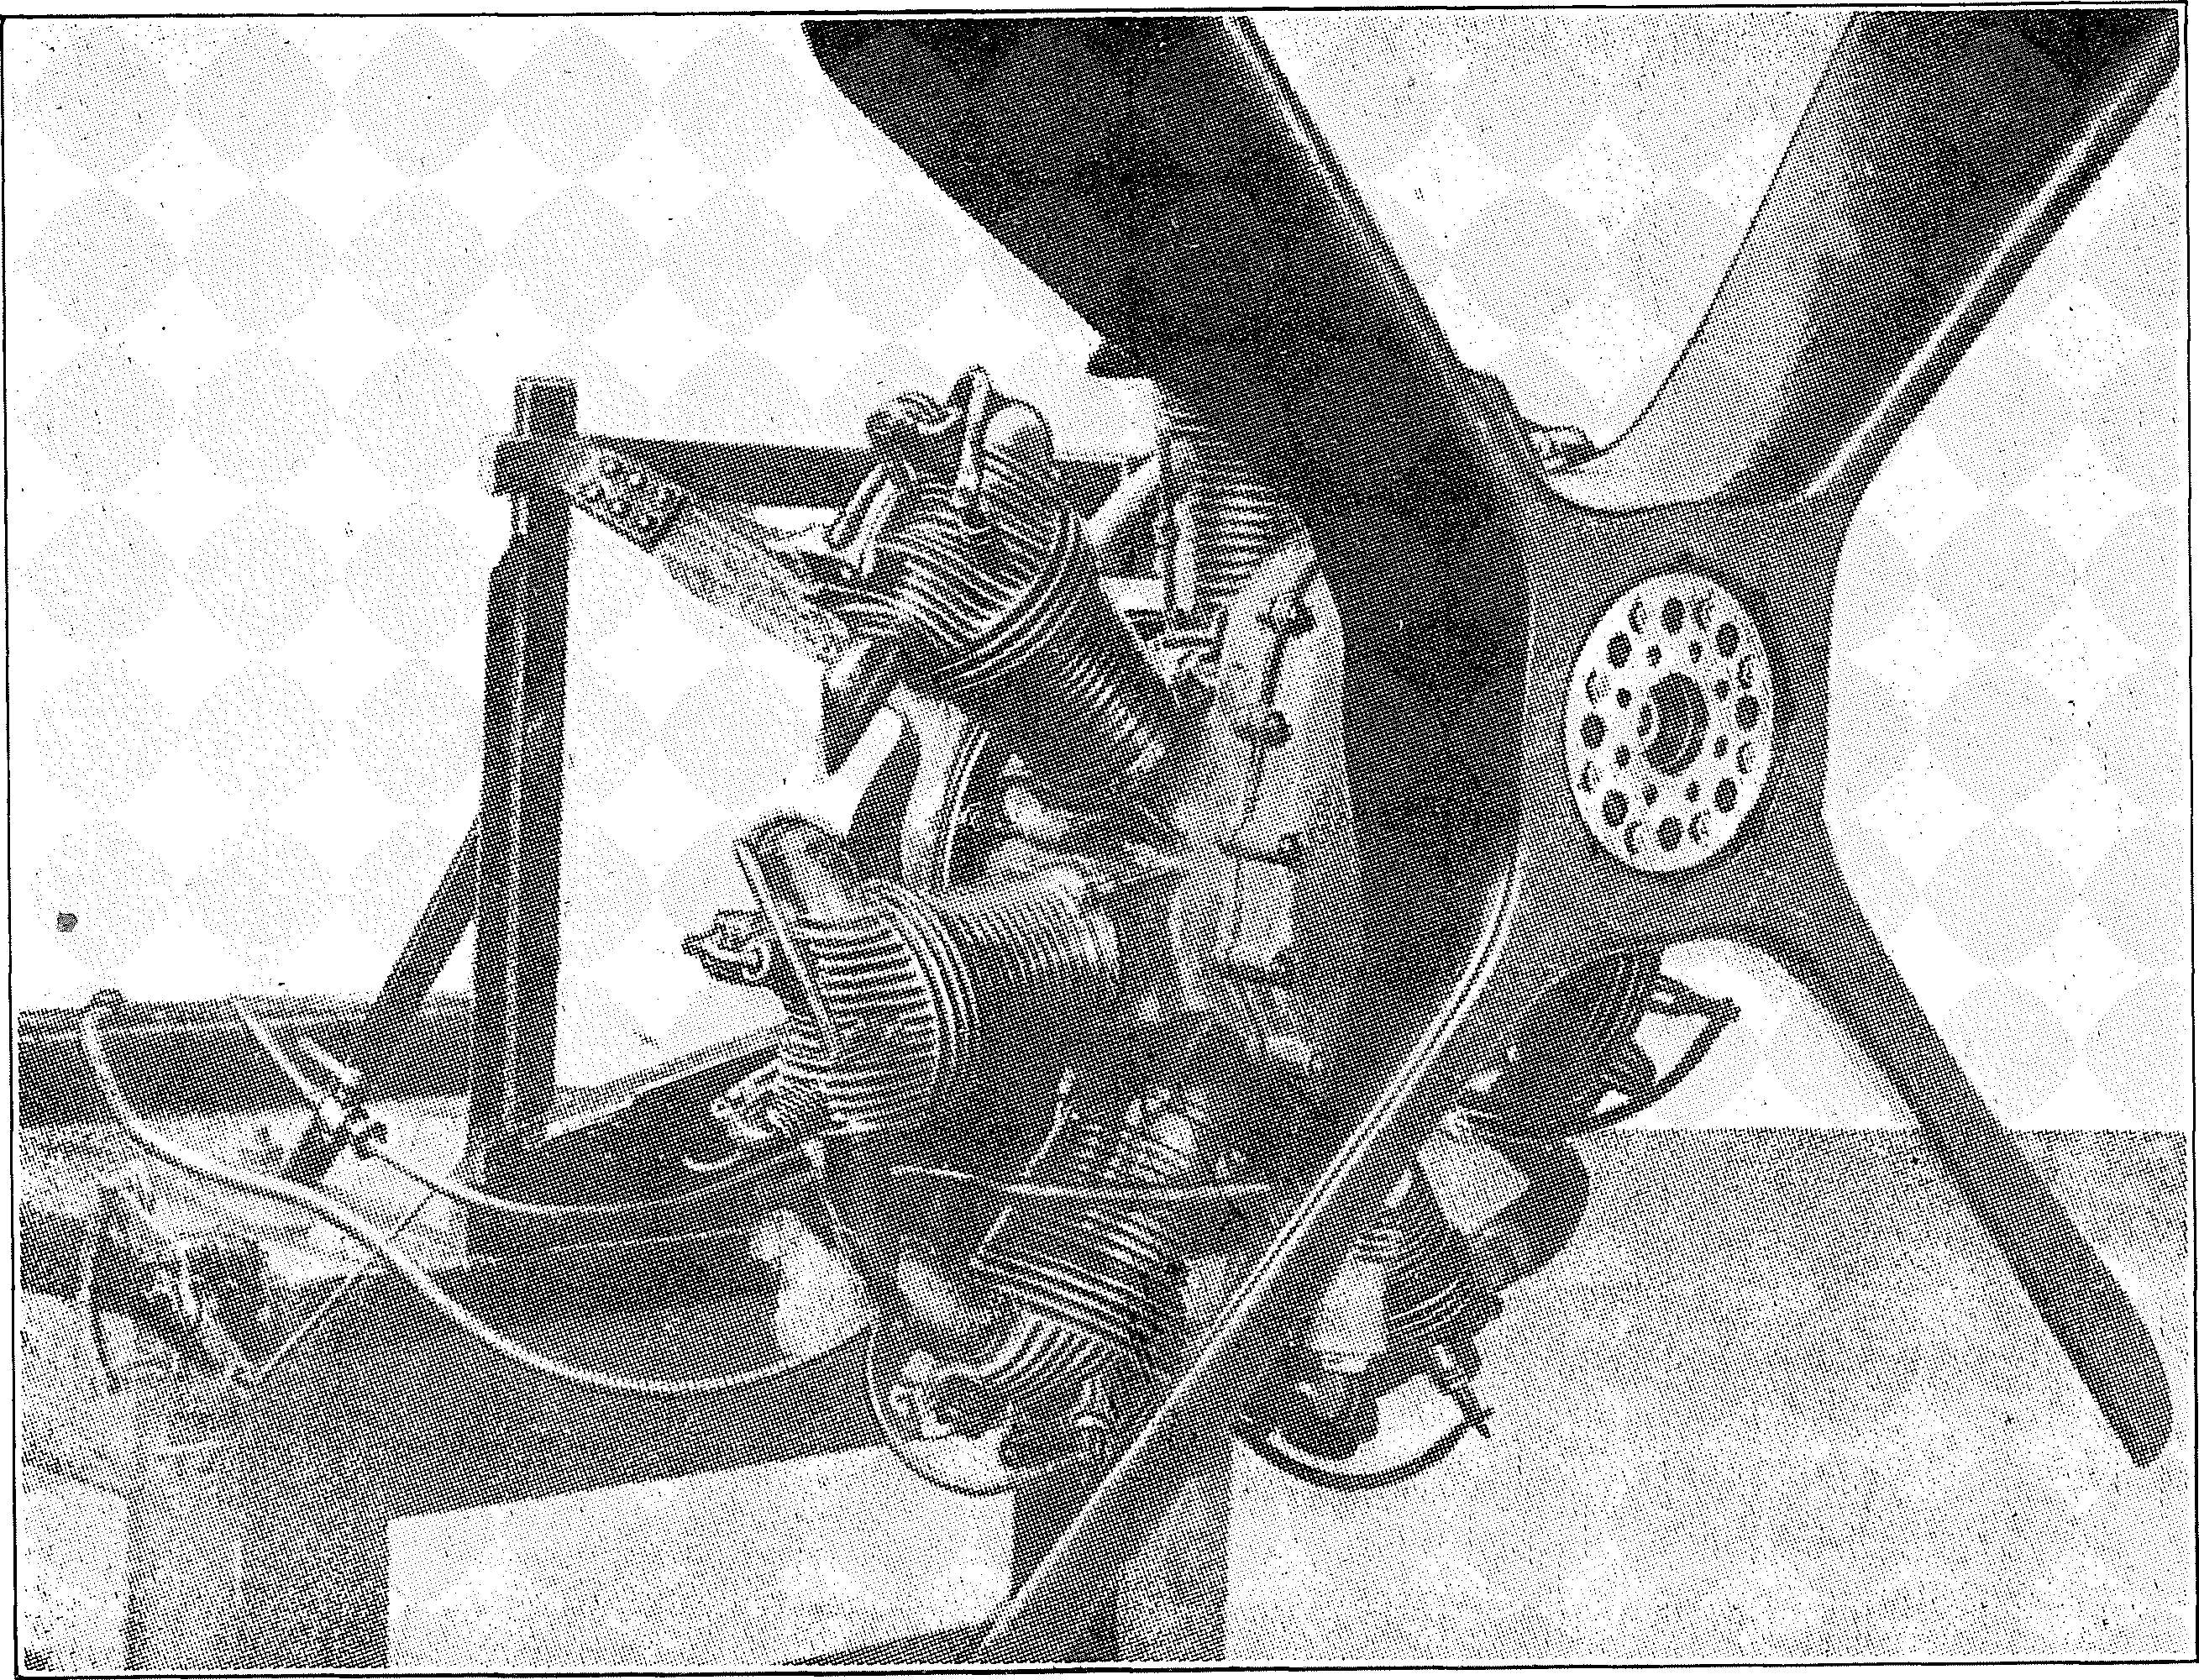 Segelflug, Motorflug und Modellflug sowie Luftfahrt und Luftverkehr im Deutschen Reich (Weimarer Republik) im Jahre 1929